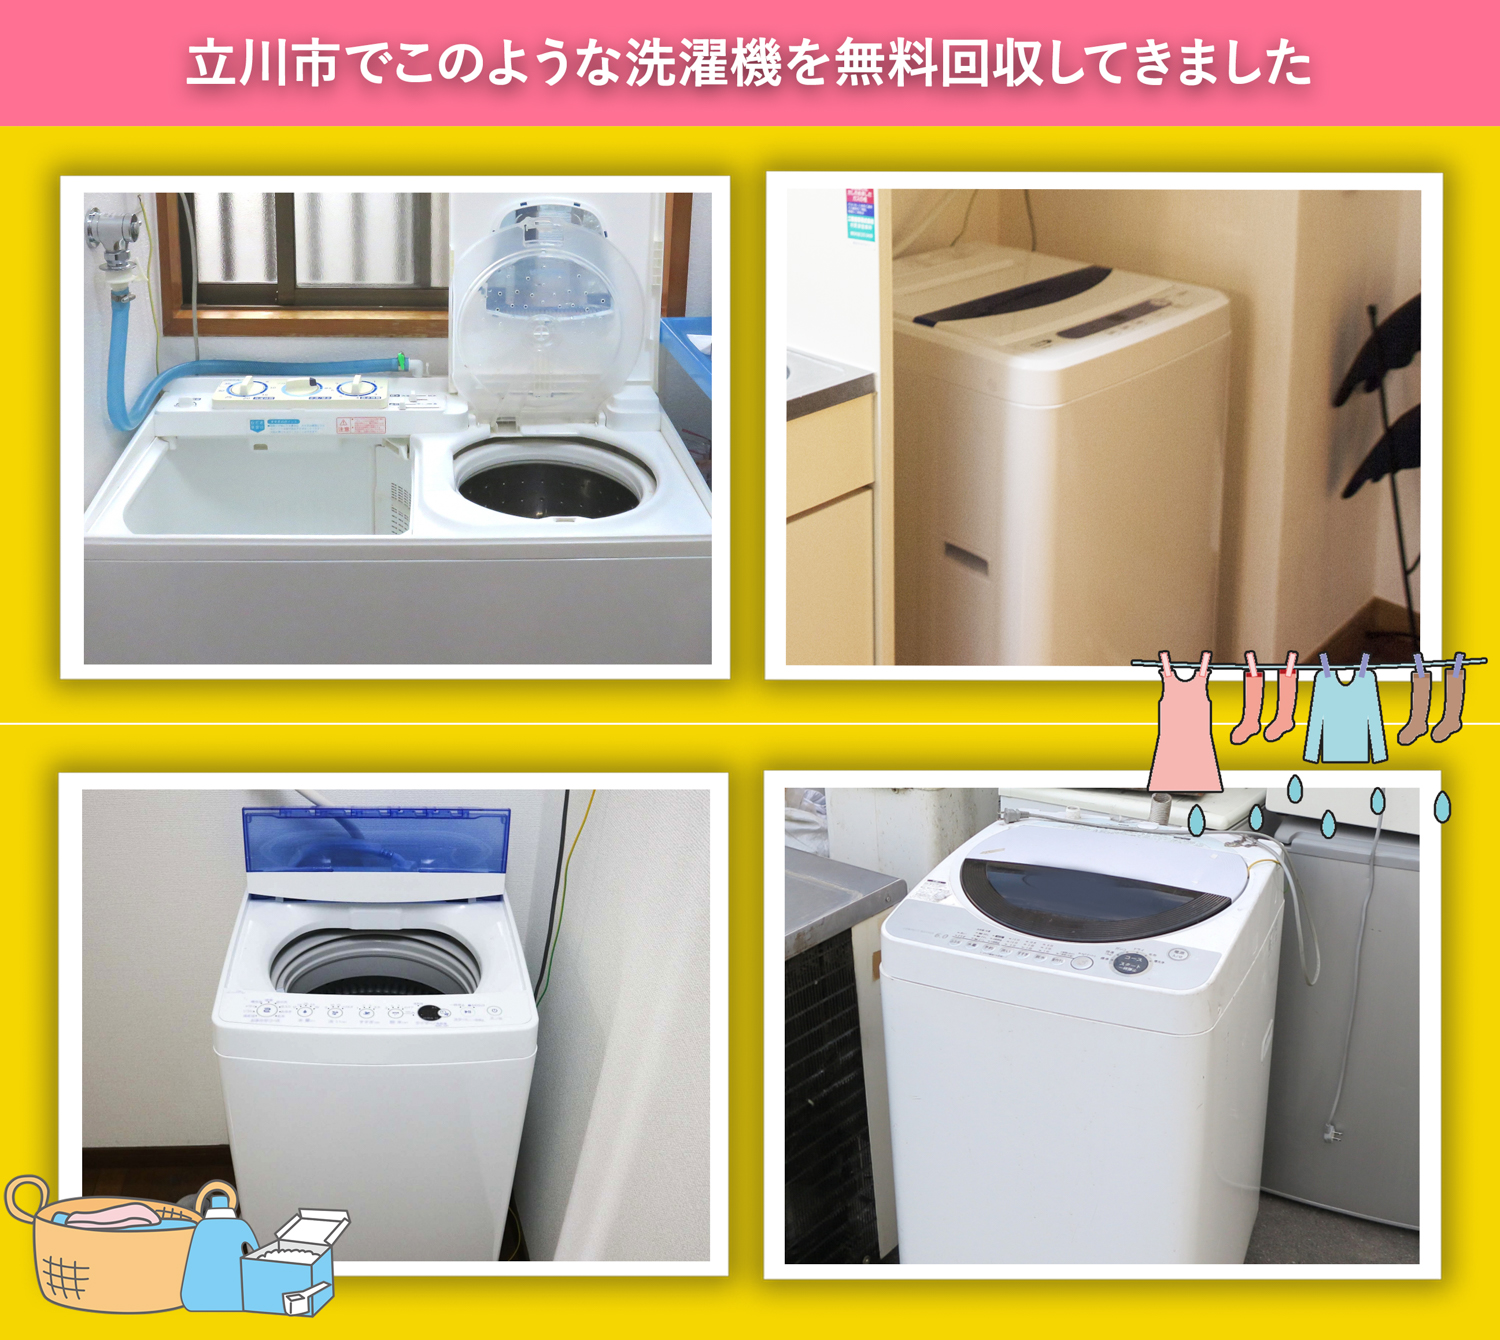 立川市でこのような洗濯機を無料回収してきました。